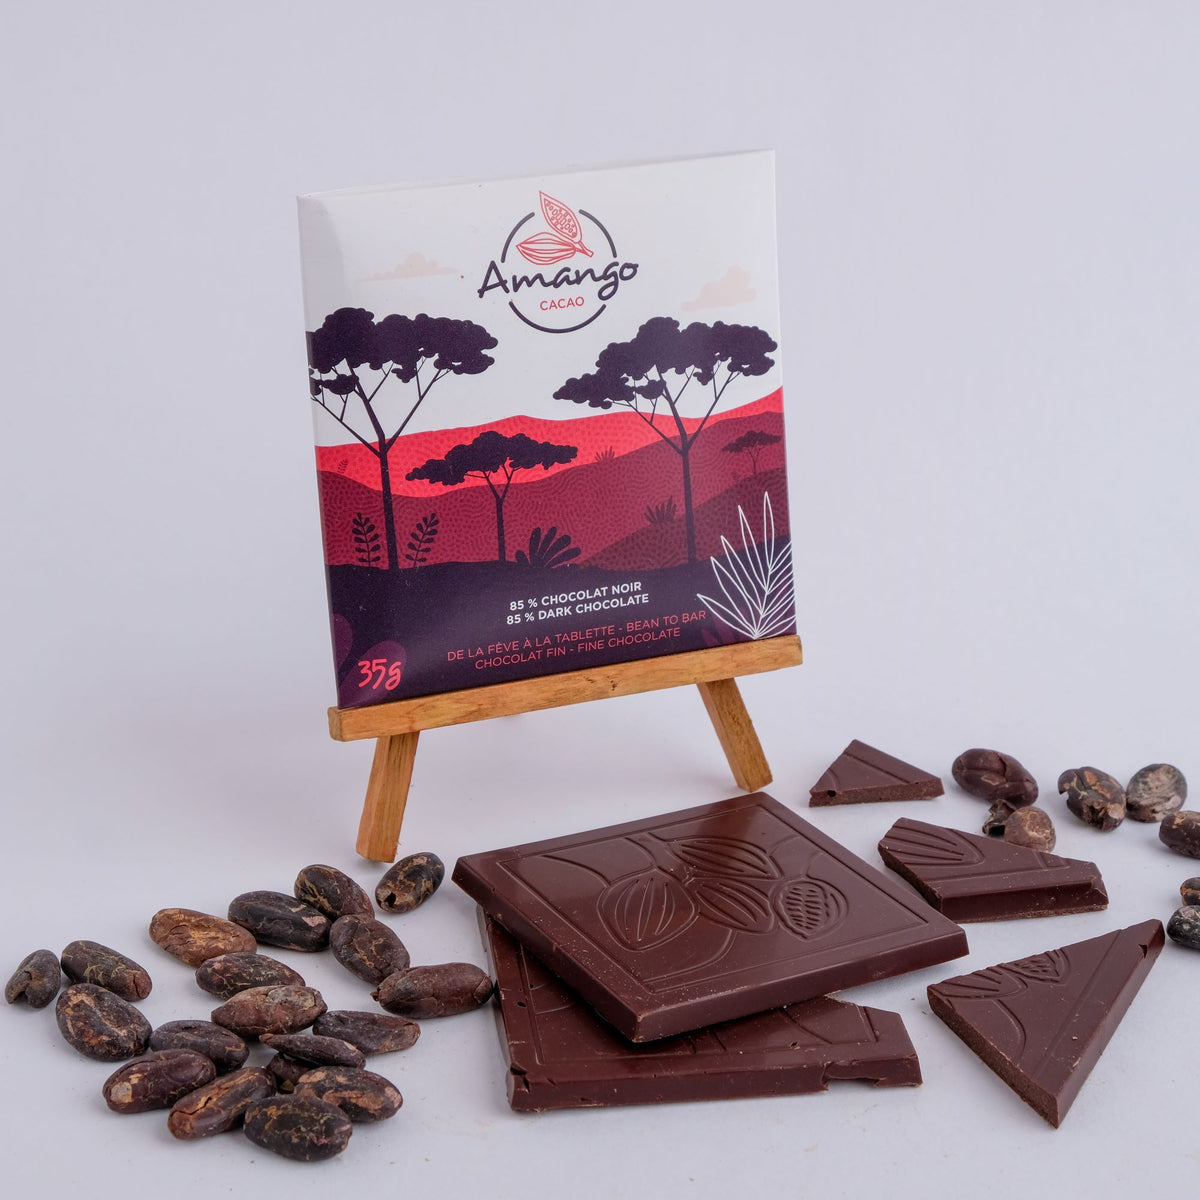 Chocolat noir 85% origine Ouganda - Néogourmets